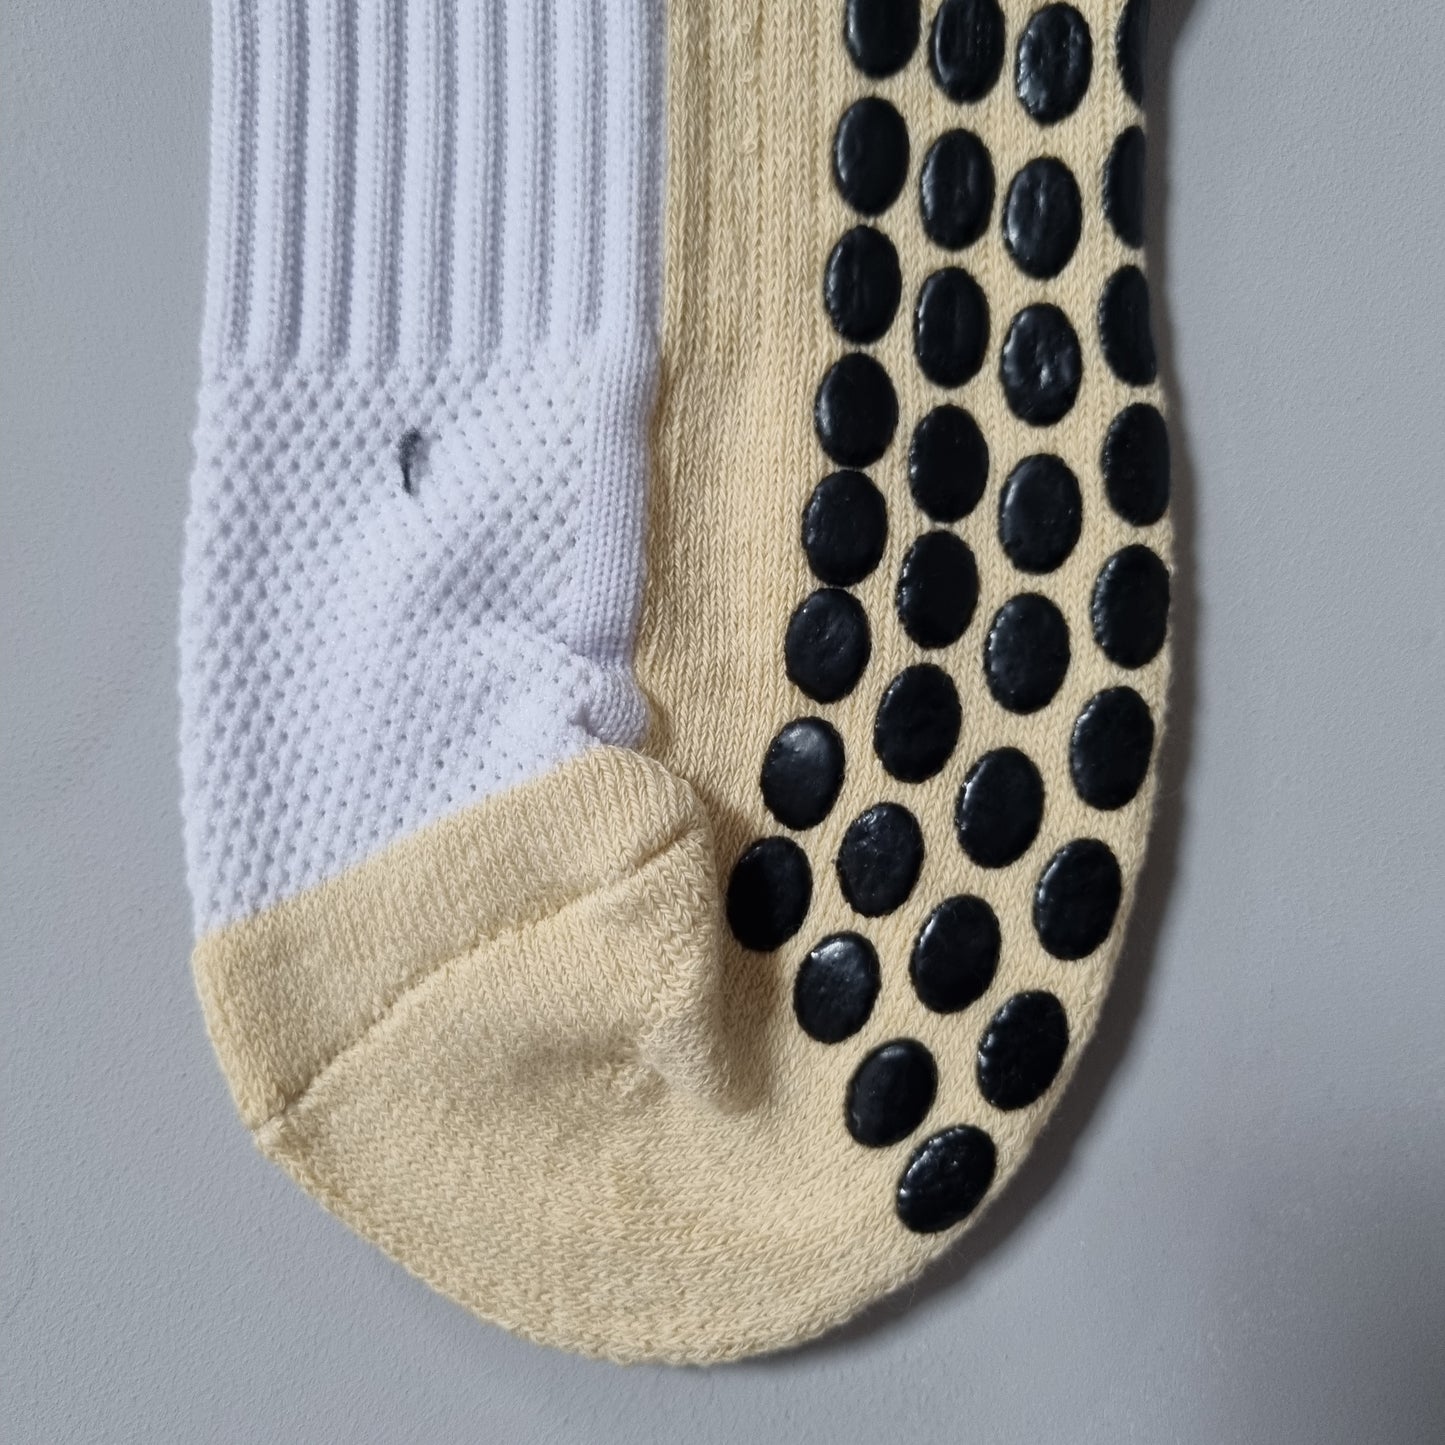 White Grip Socks